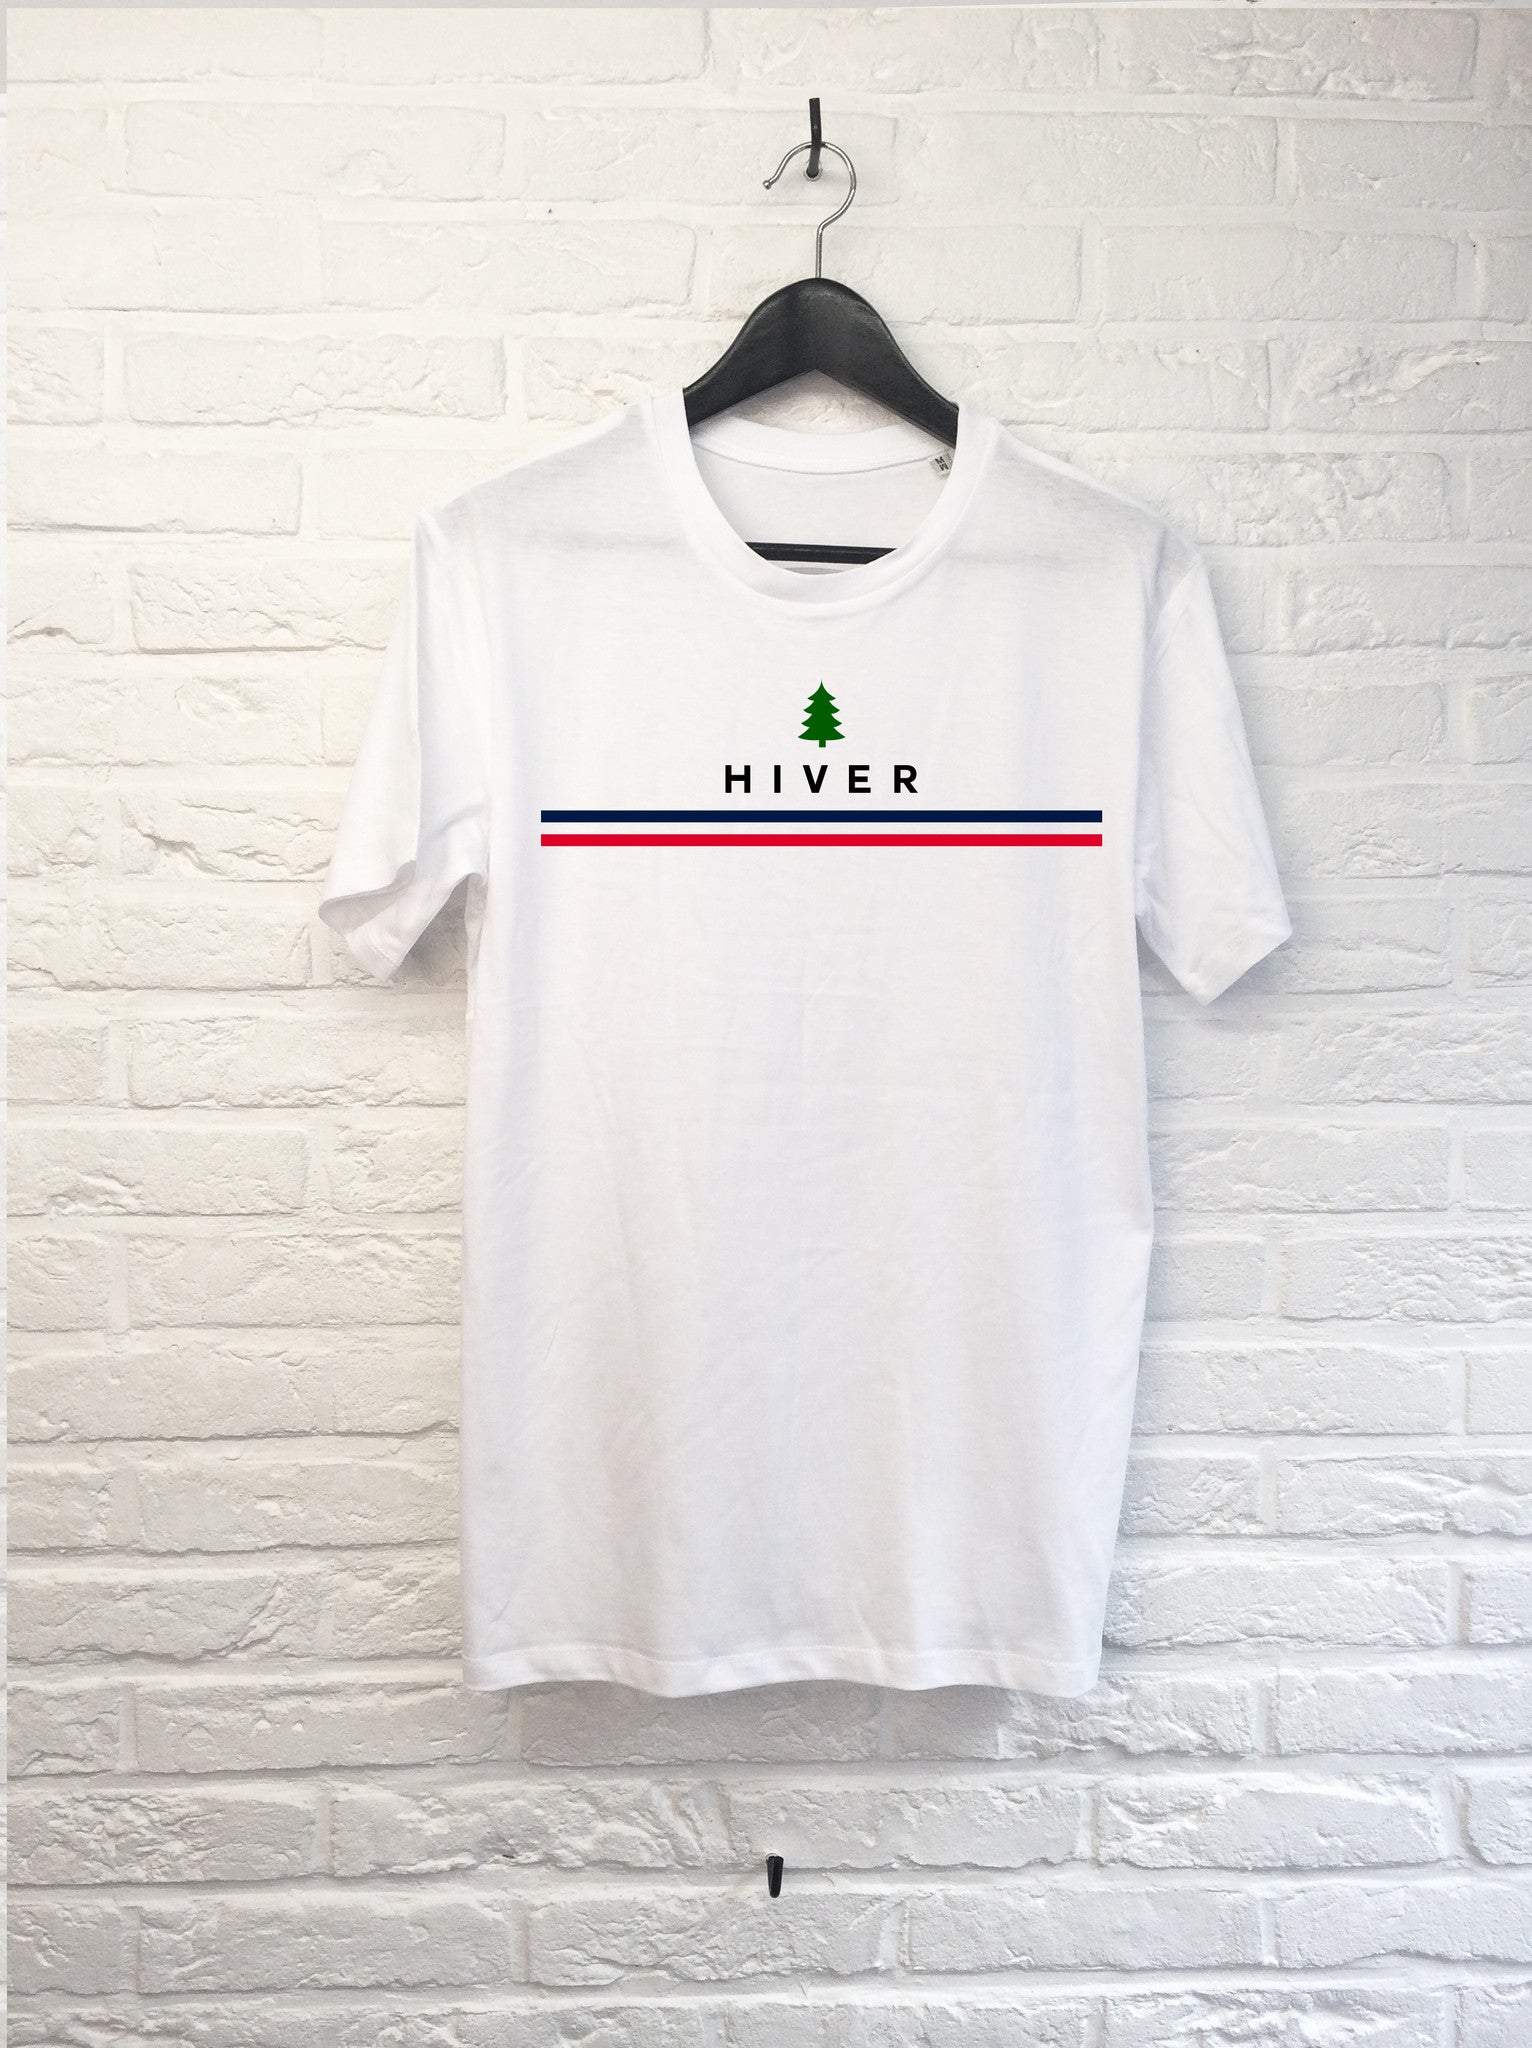 Hiver-T shirt-Atelier Amelot